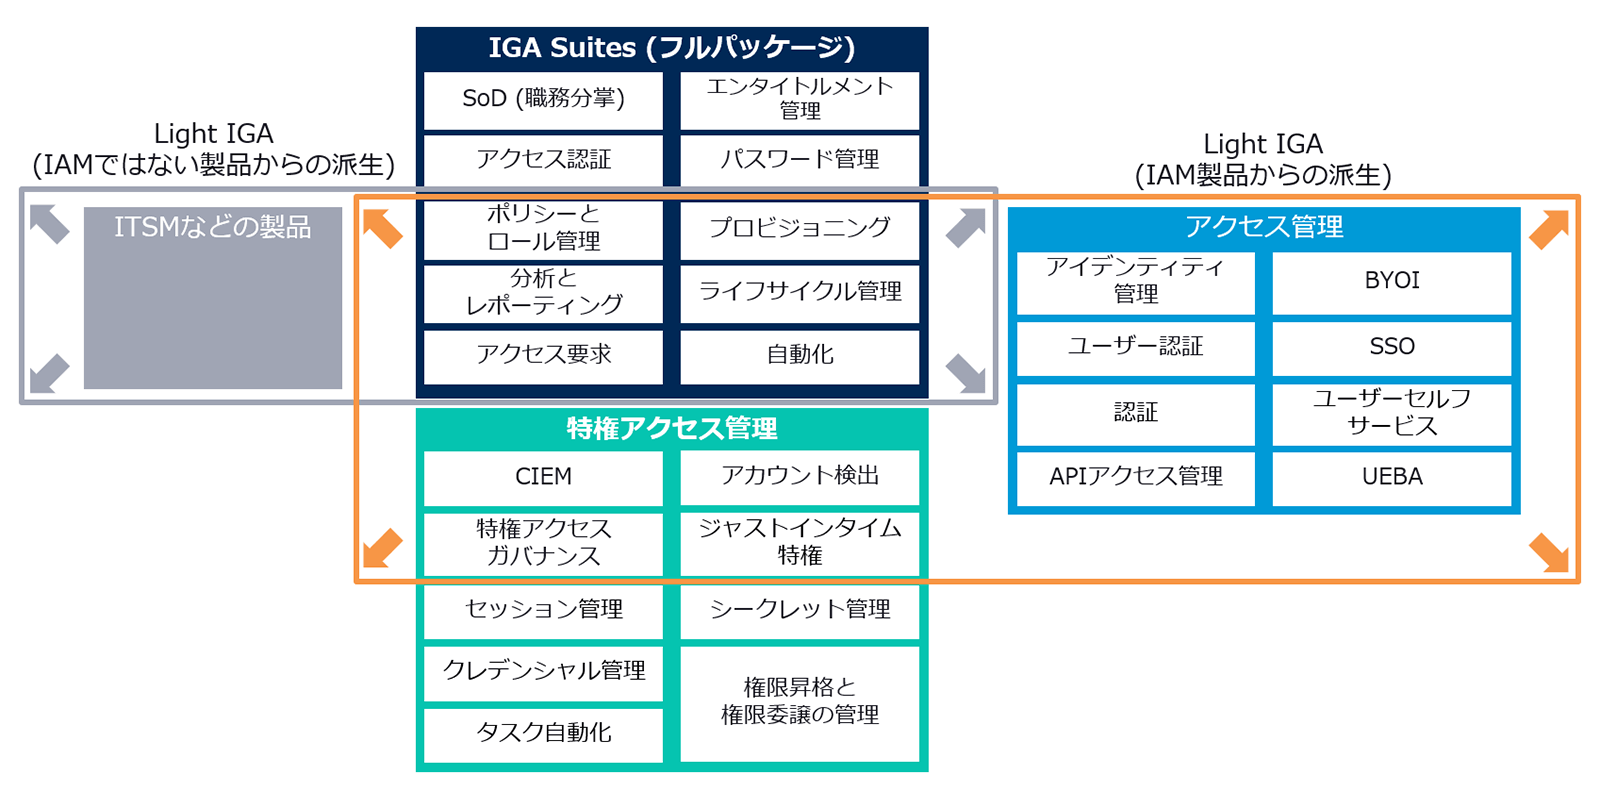 IGA SuitesとLight IGAの比較